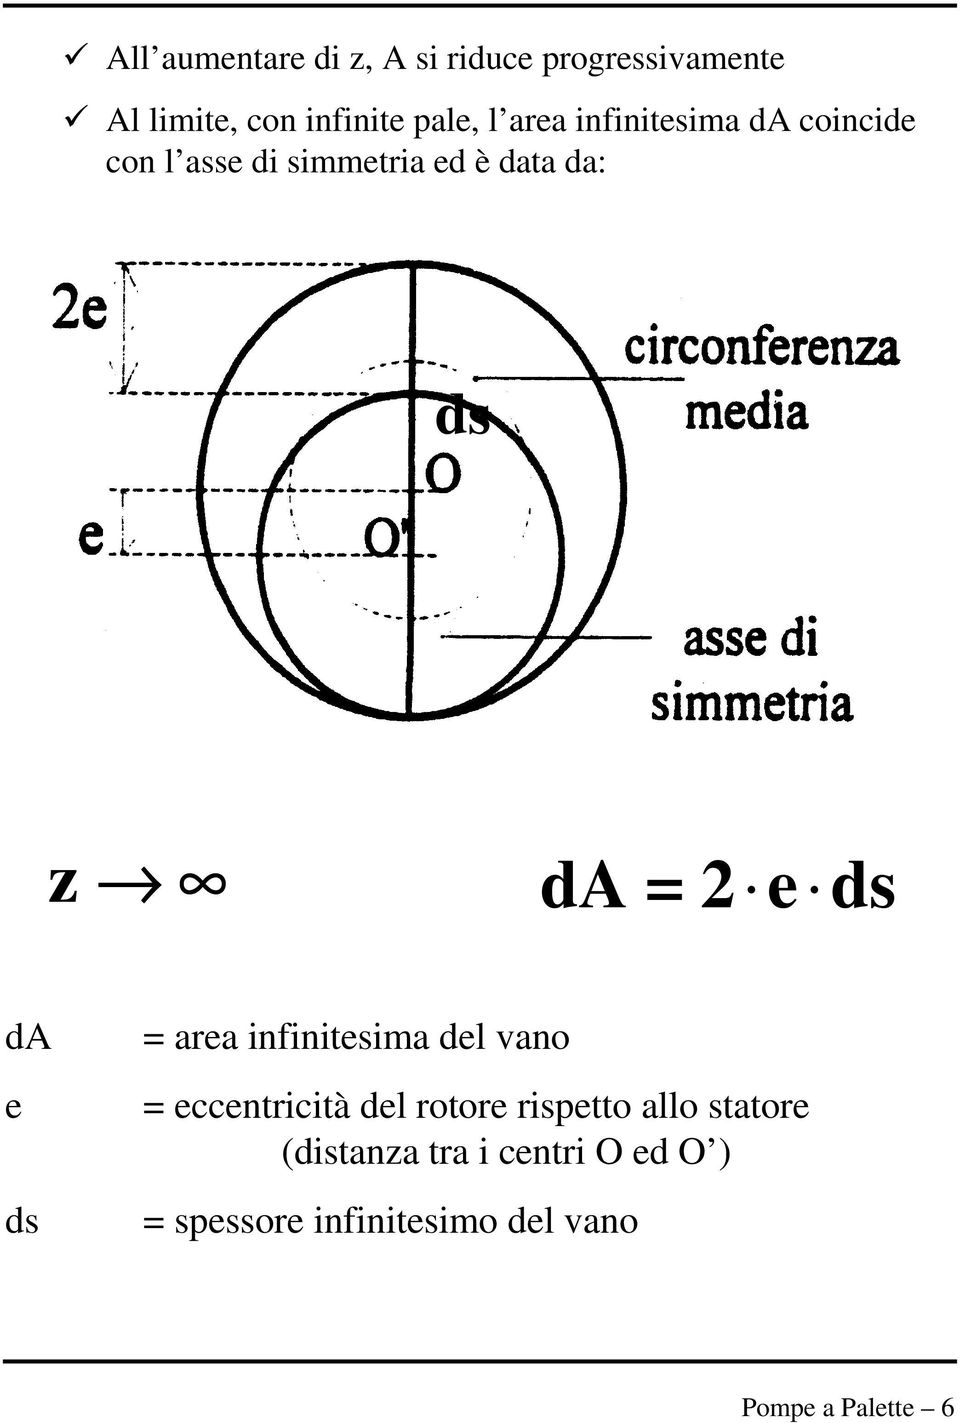 ds da e ds = area infinitesima del vano = eccentricità del rotore rispetto allo